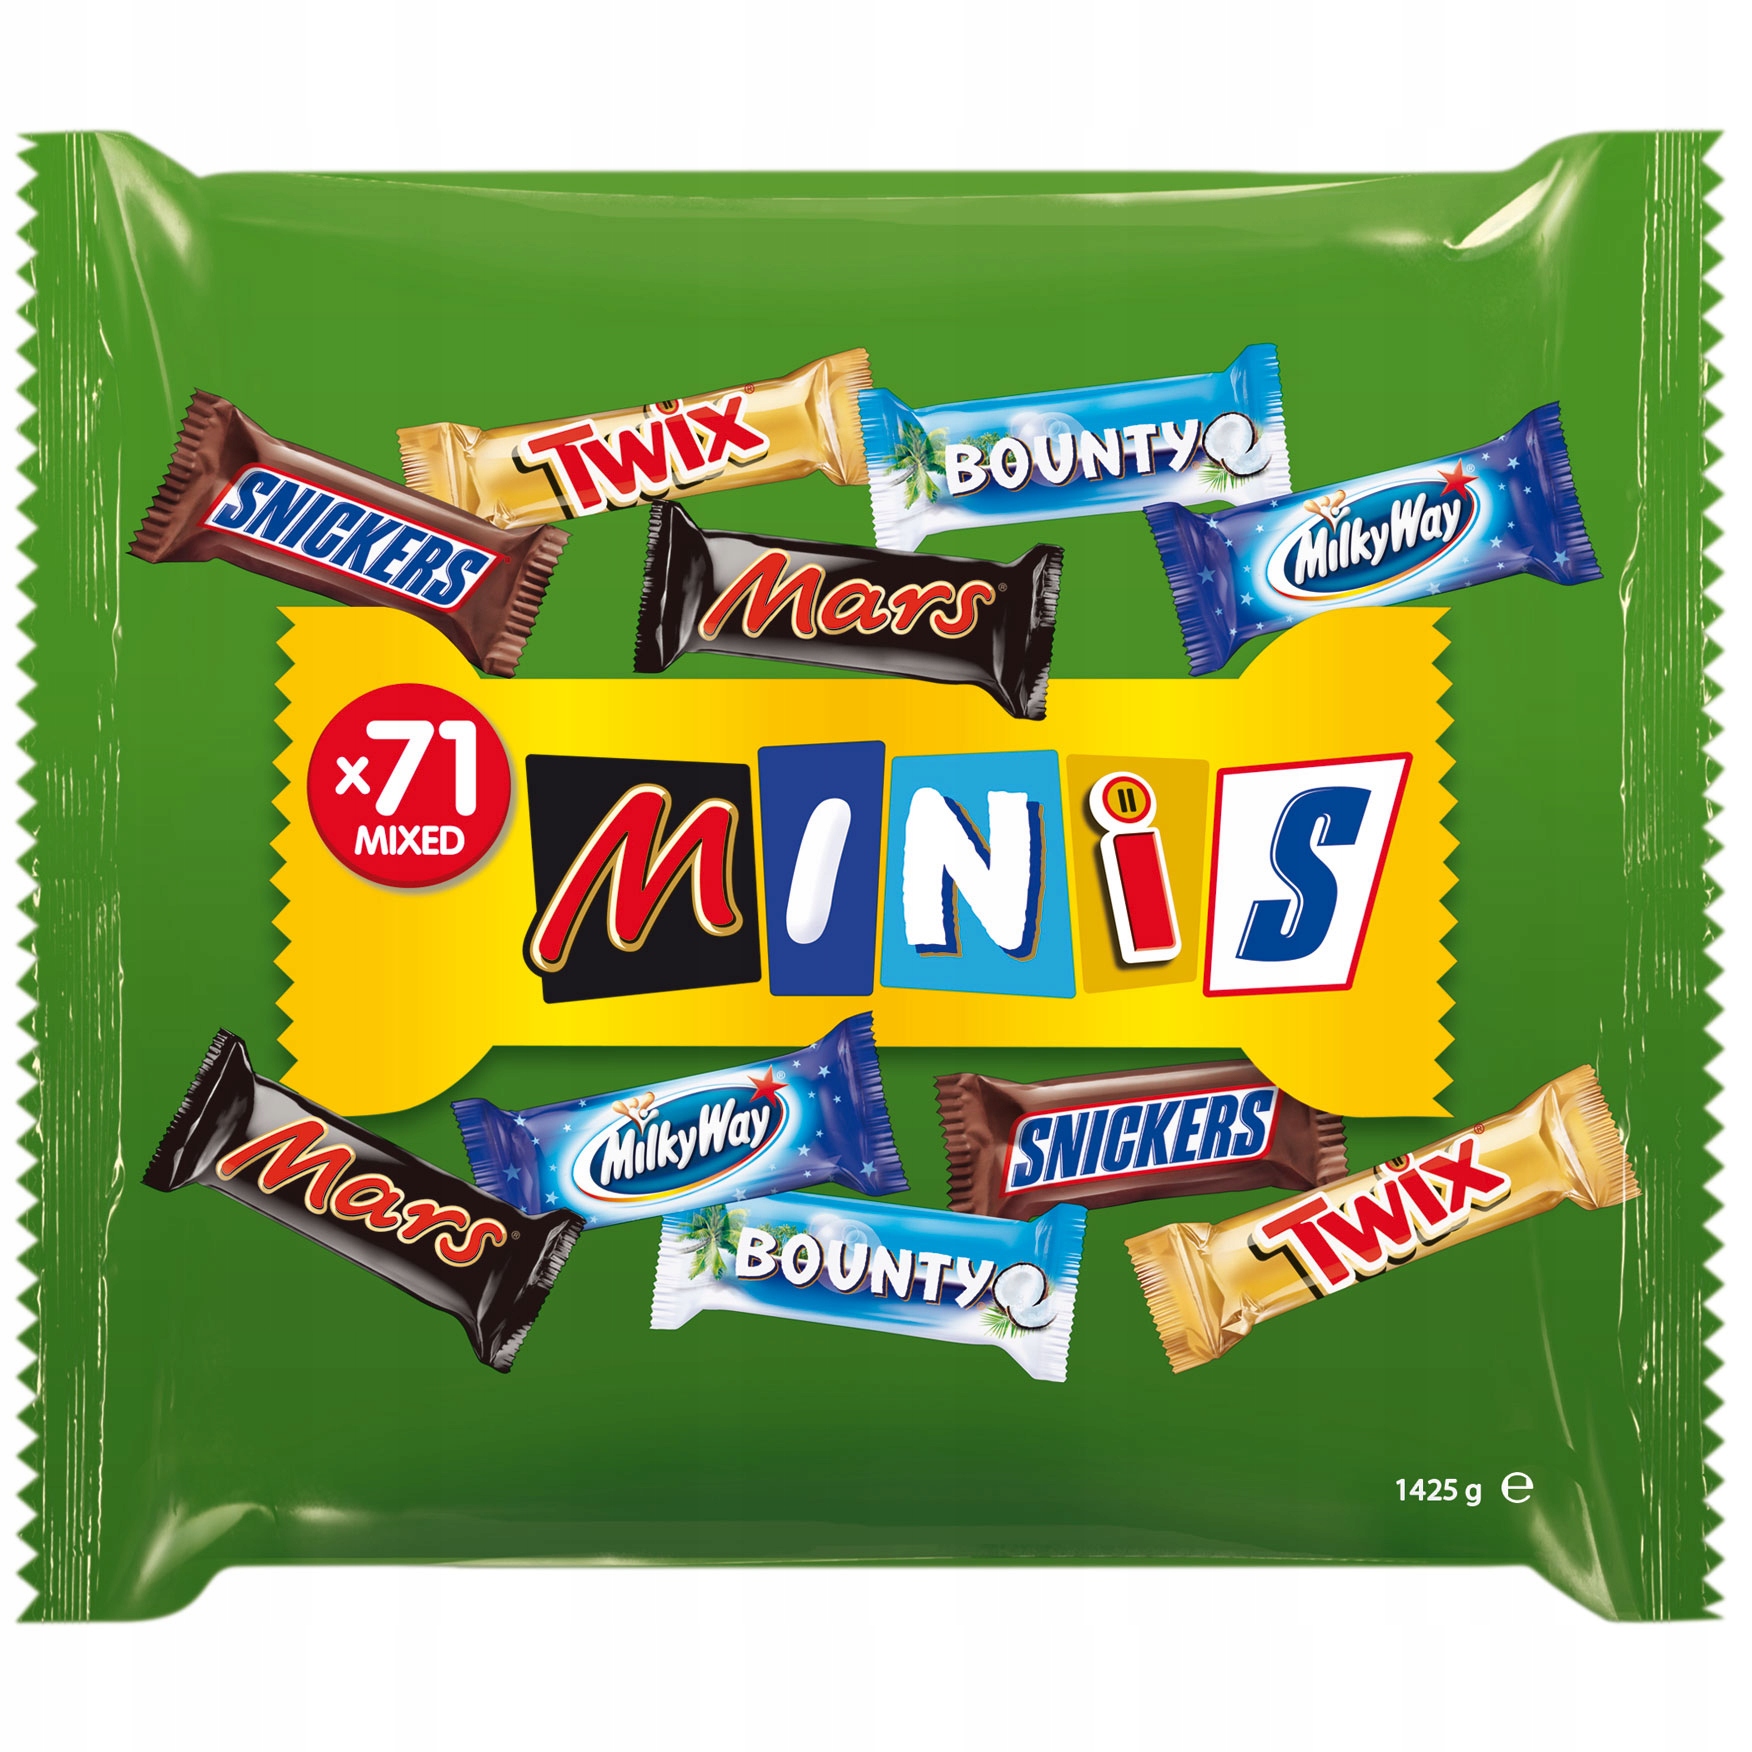 Конфеты Minis Mix Mars Bounty MilkWay 1425g 71шт